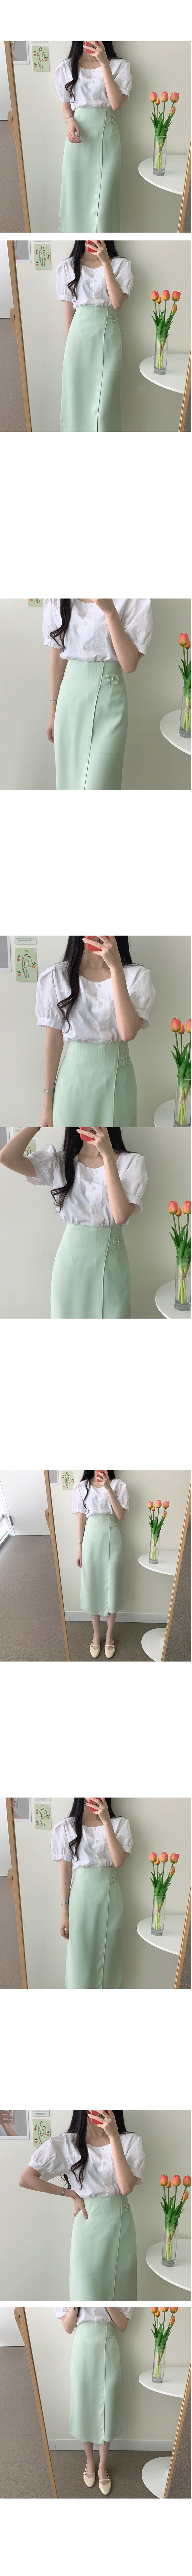 日韩夏季两件套连衣裙方领衬衫+中长款半身裙时尚休闲